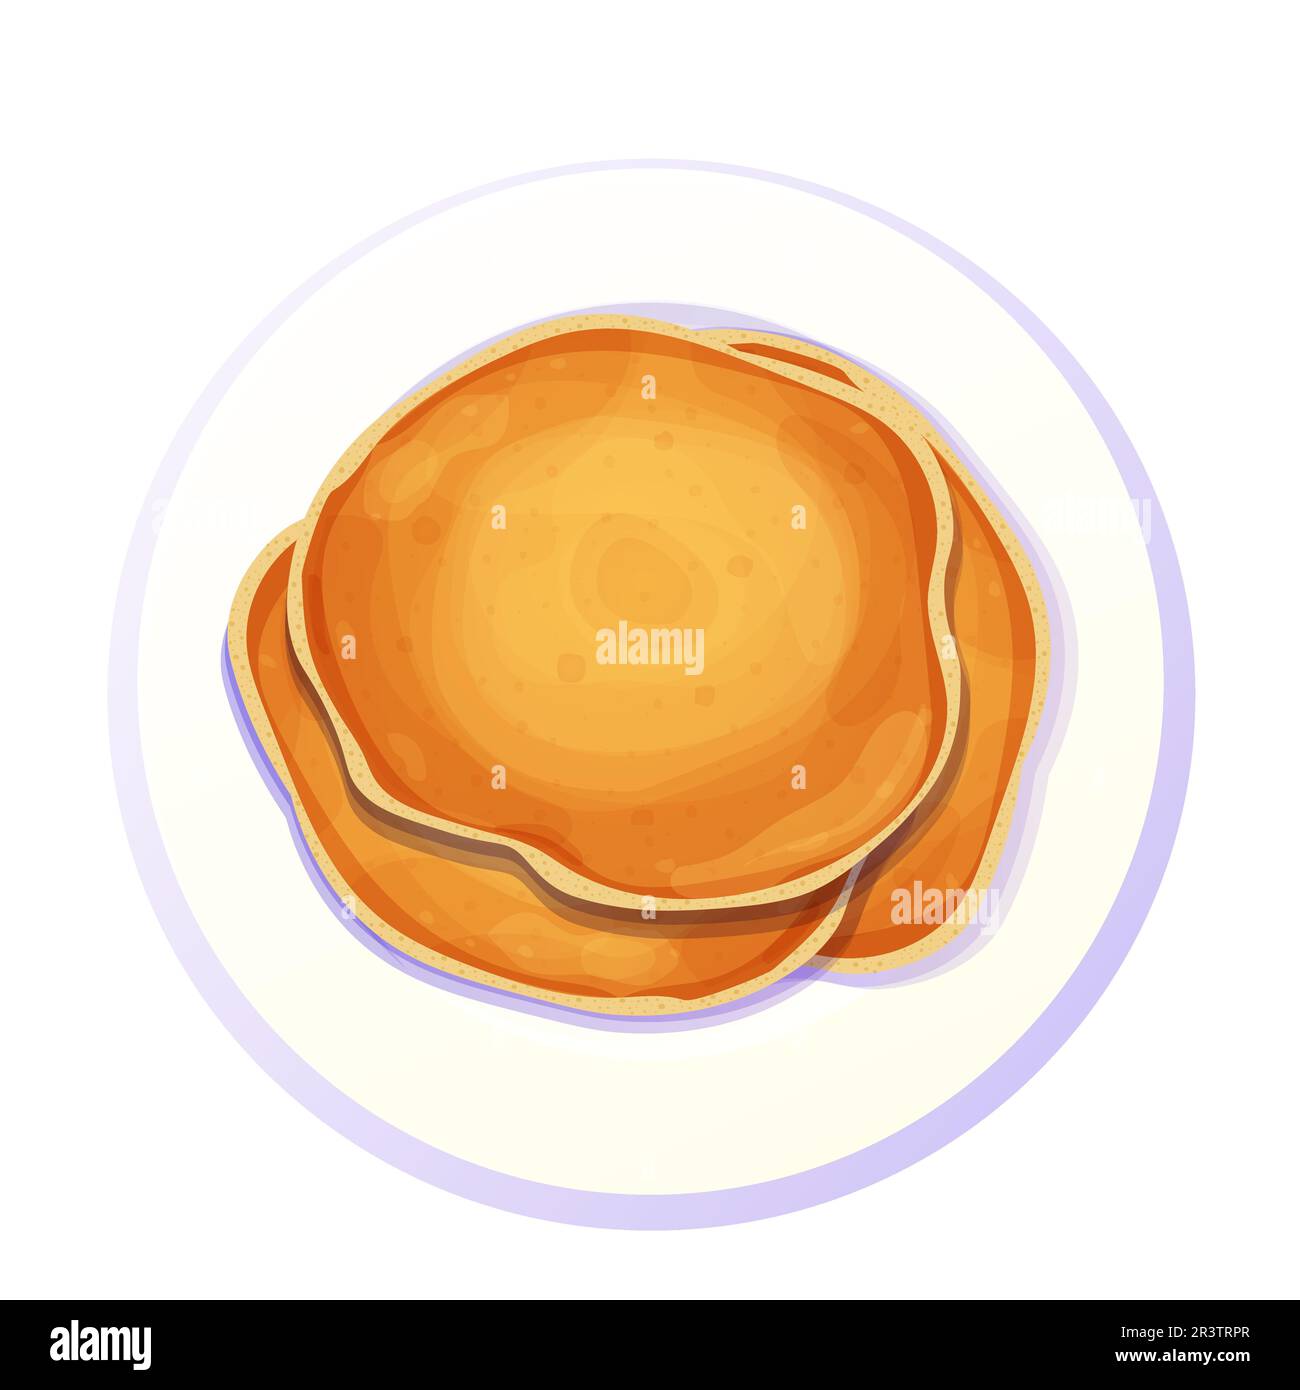 Les crêpes empilent la vue de dessus dans l'assiette dans le style de dessin animé isolé sur fond blanc. Dessert Circle, petit déjeuner. . Illustration vectorielle Illustration de Vecteur